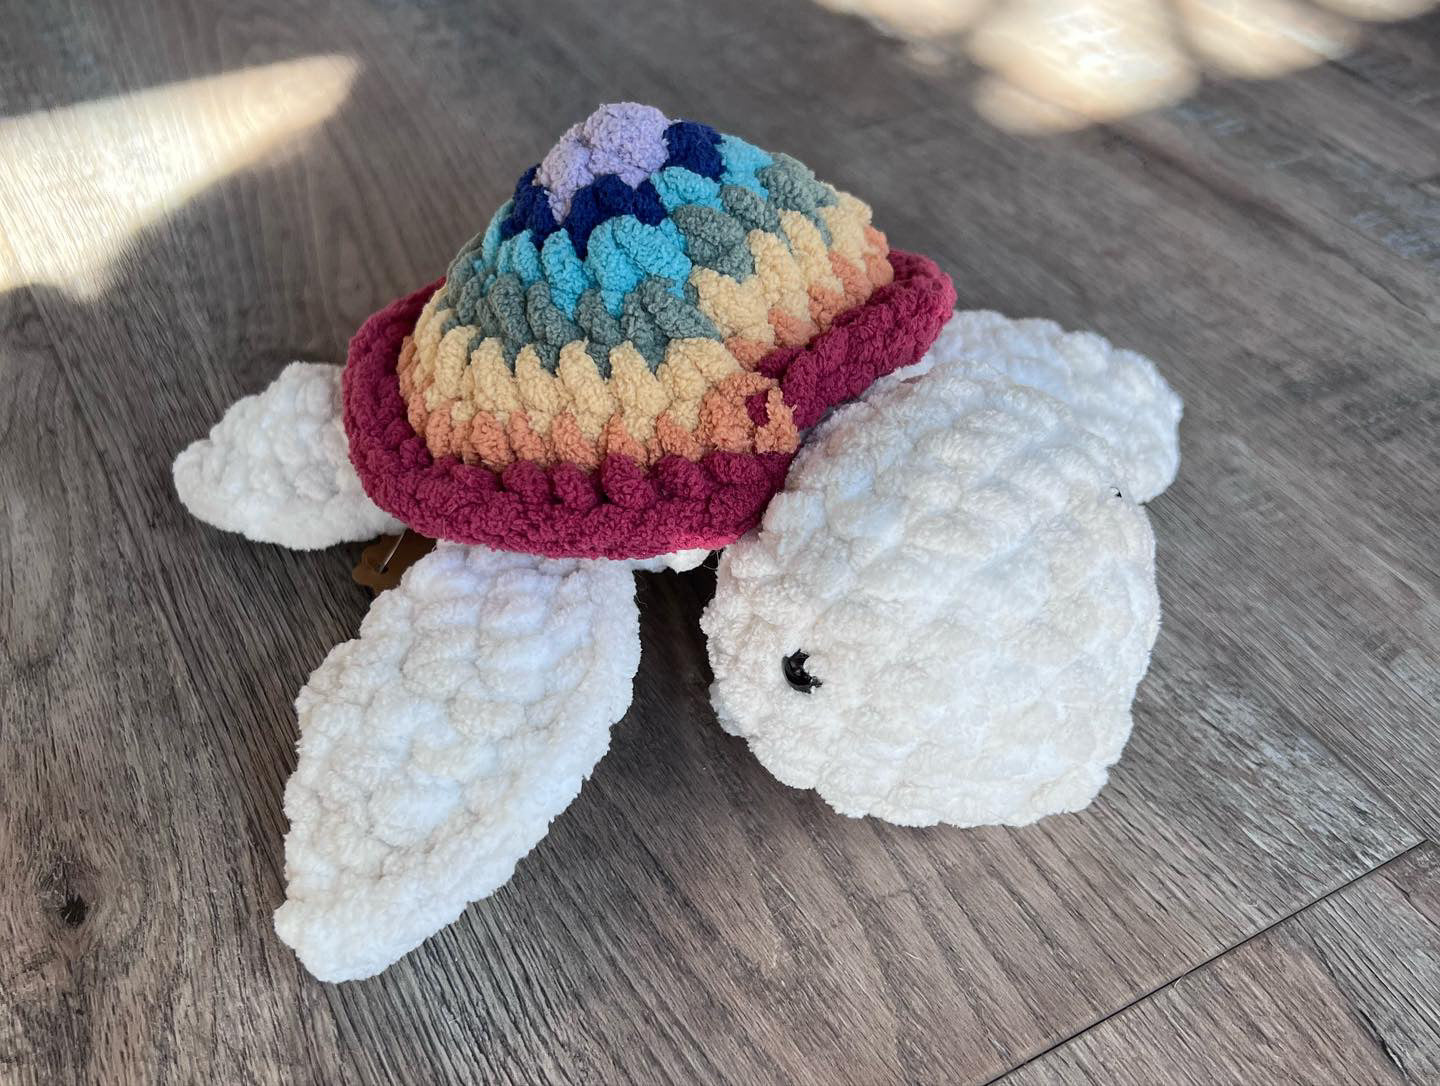 Crochet Turtle